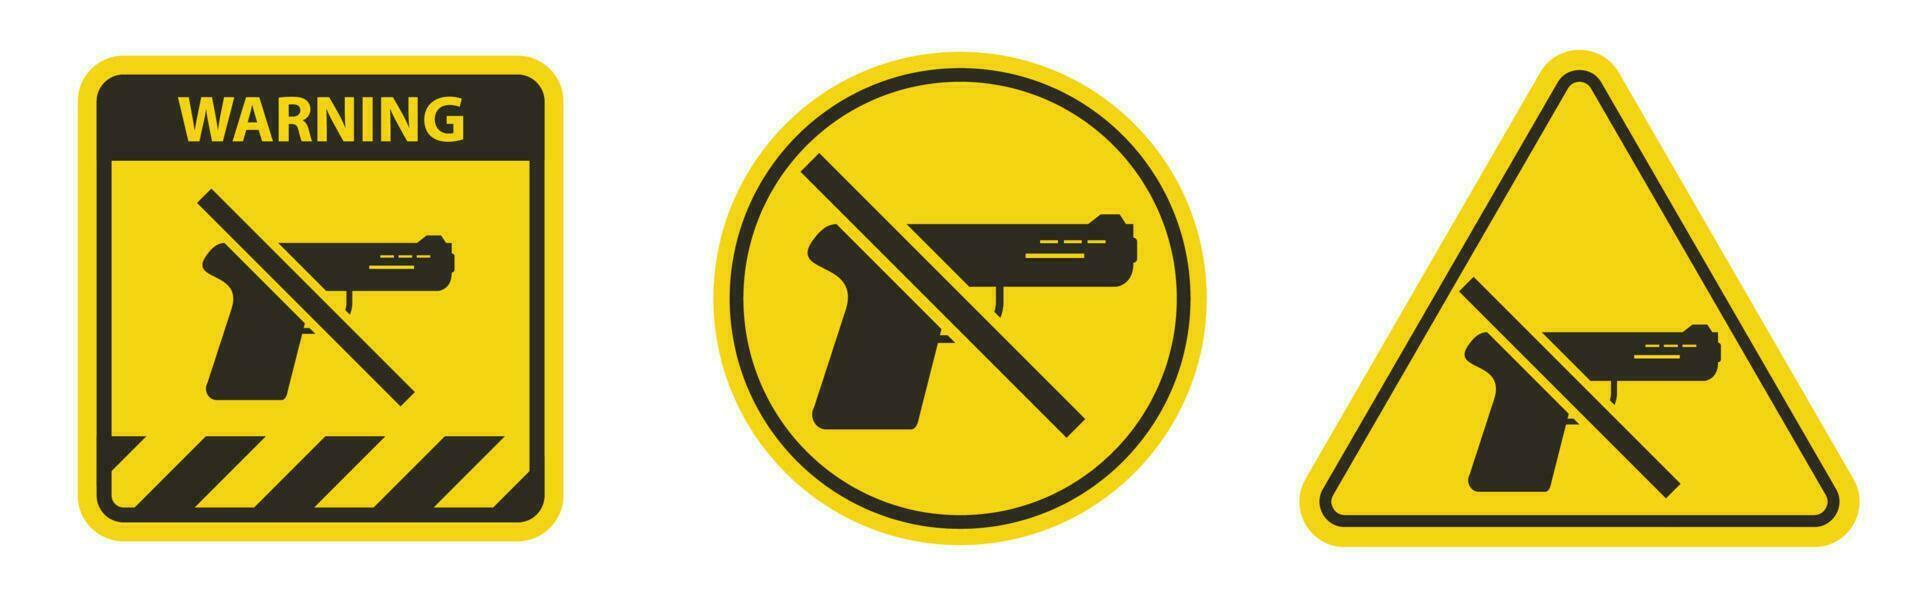 armas de sinal de proibição, nenhum sinal de armas no fundo branco vetor